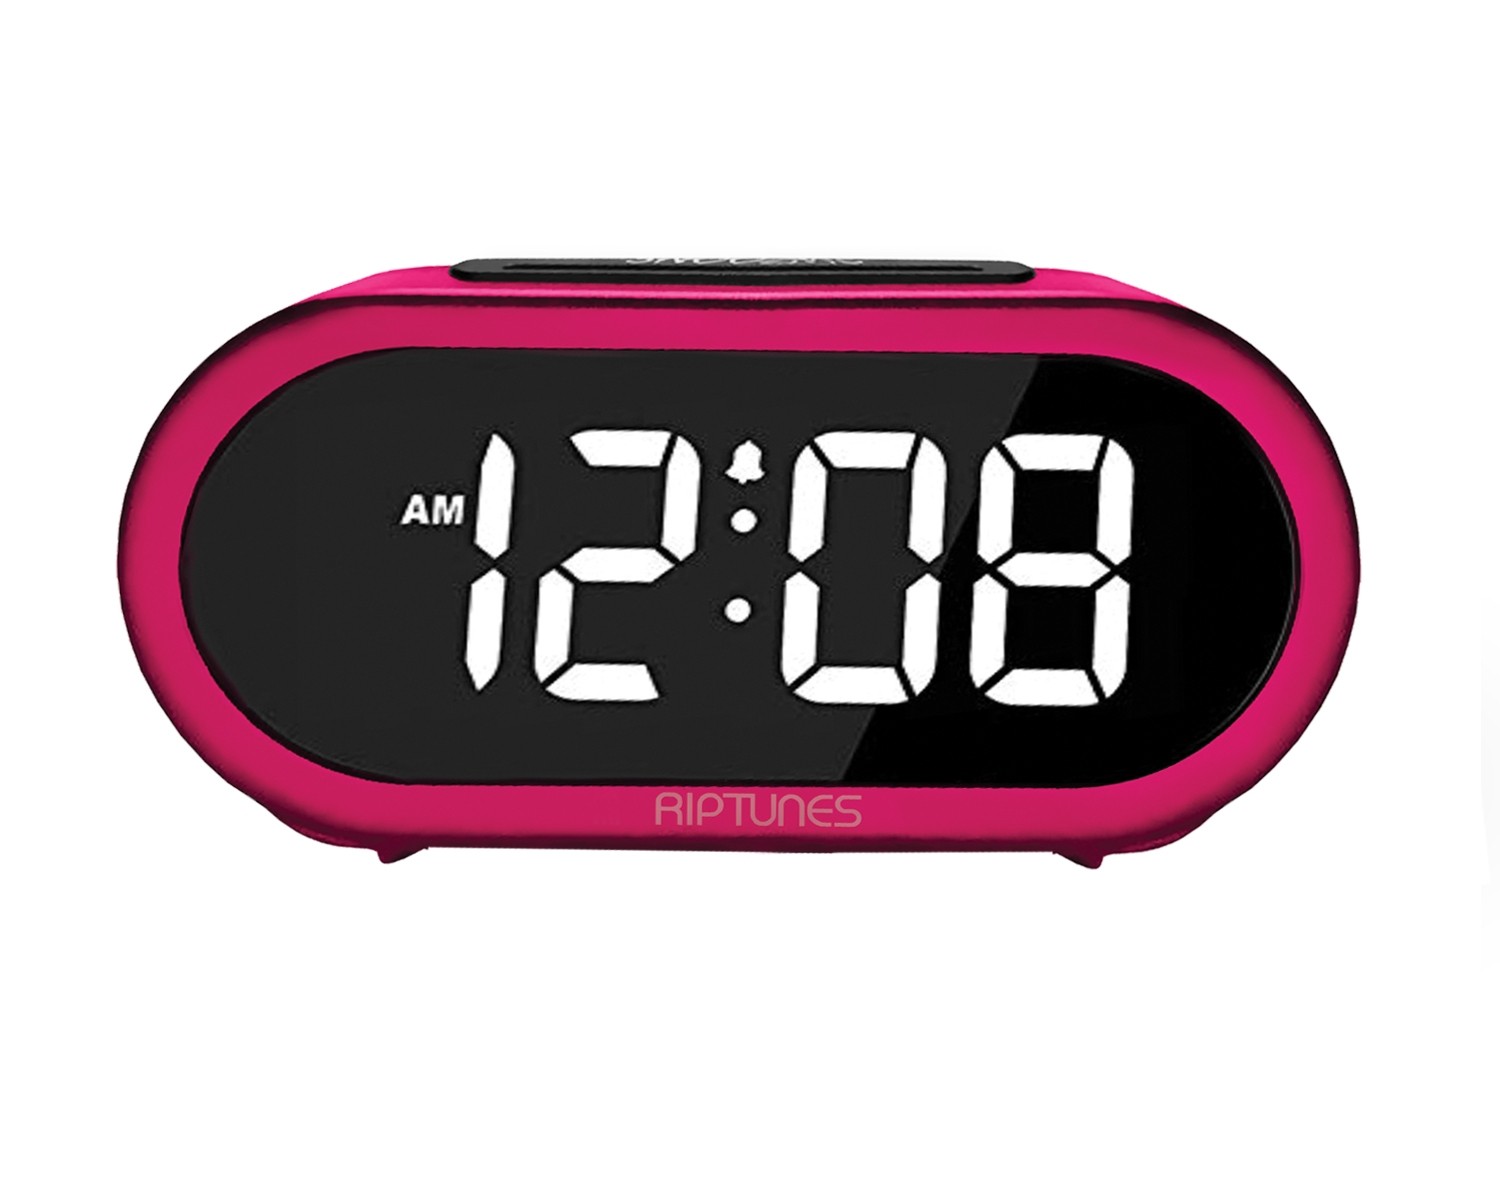 Riptunes 1.4-Inch Digital Alarm Clock w/ 5 Alarm Sounds Pink 